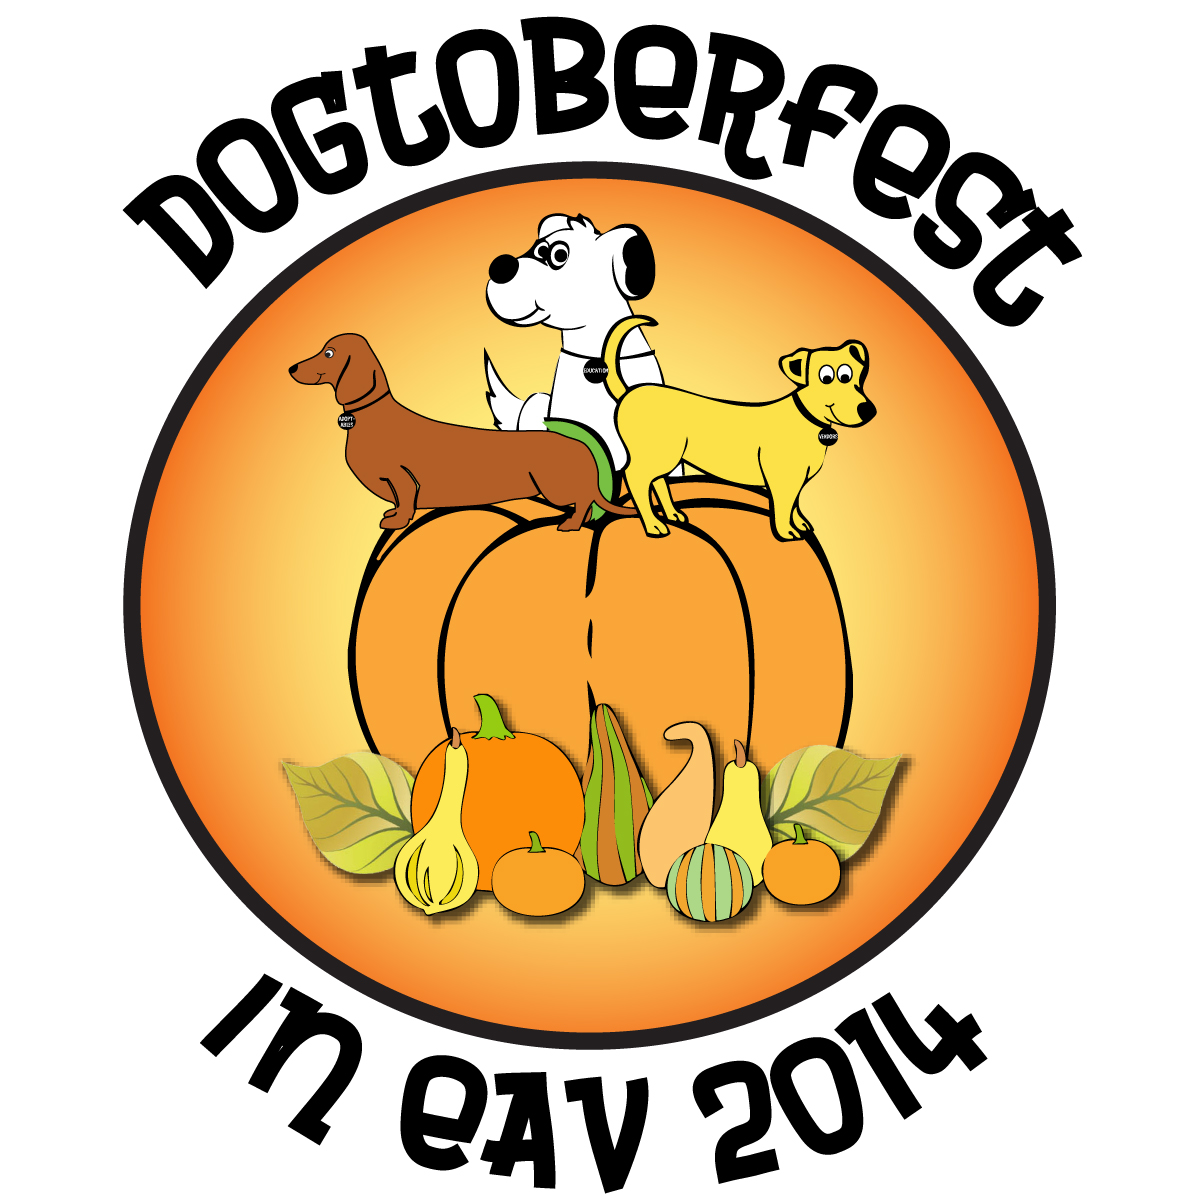 Dogtoberfest 2014